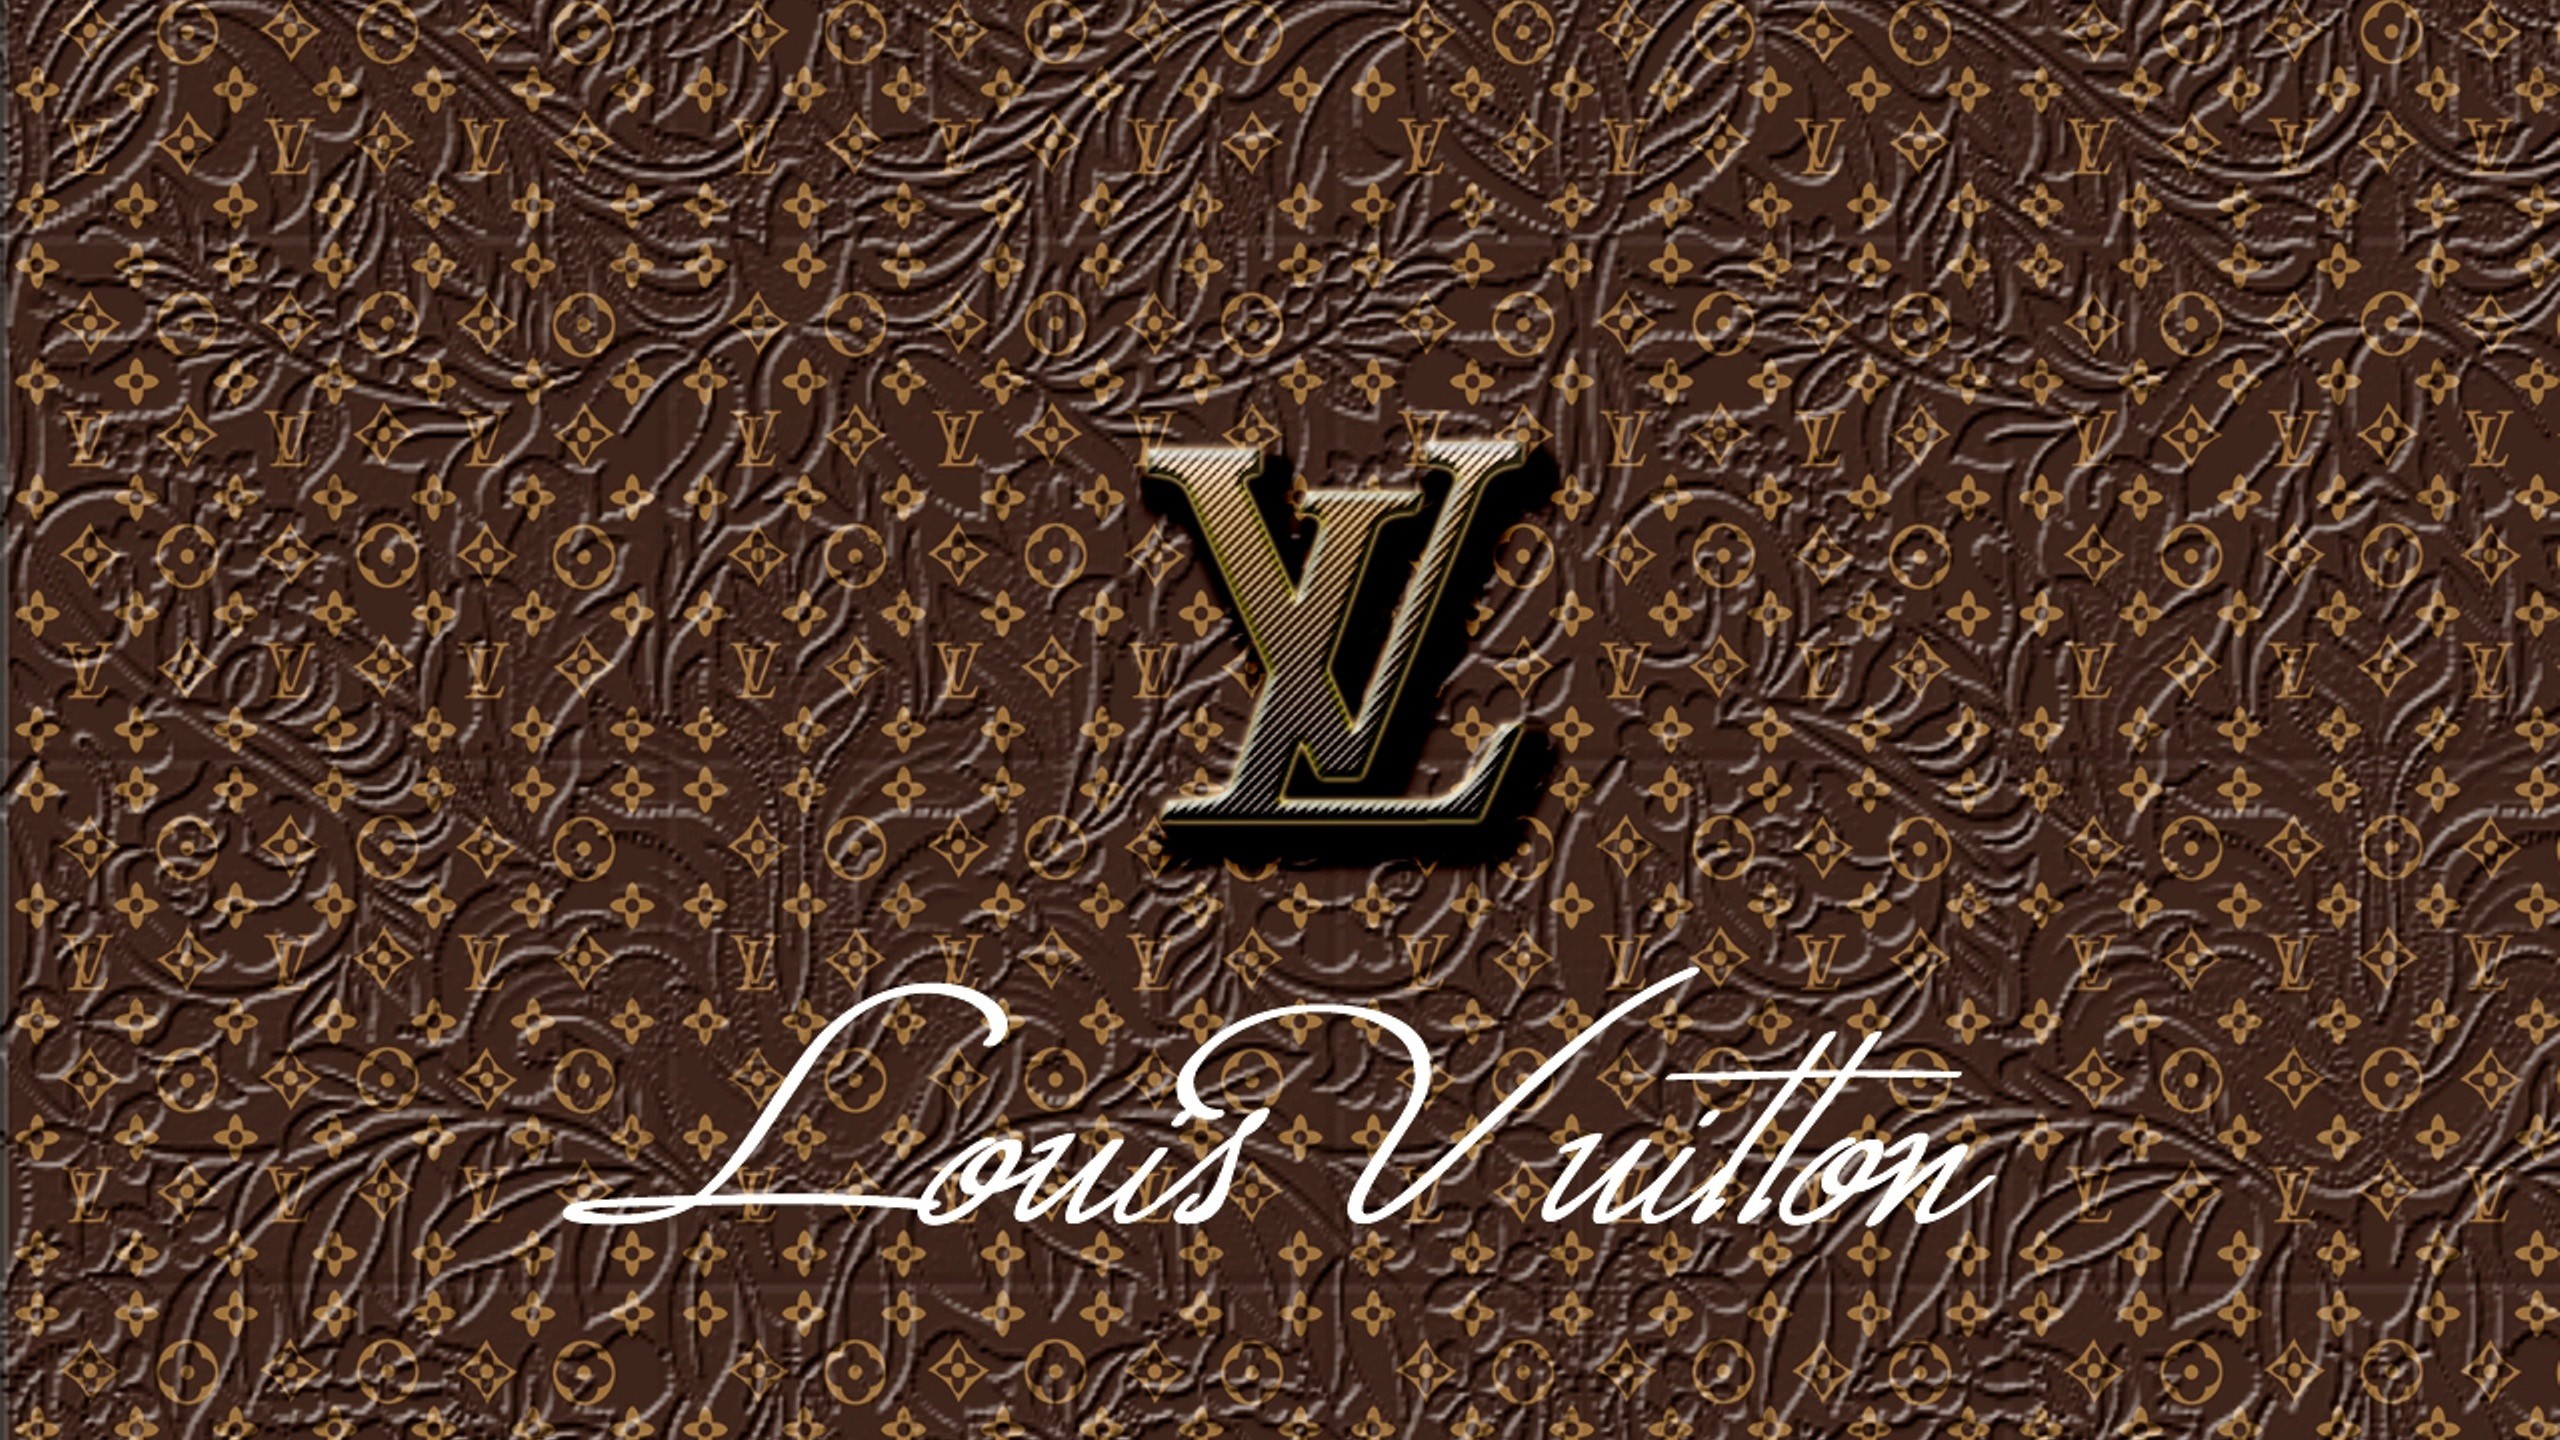 Steam Workshop::Louis Vuitton [4K]